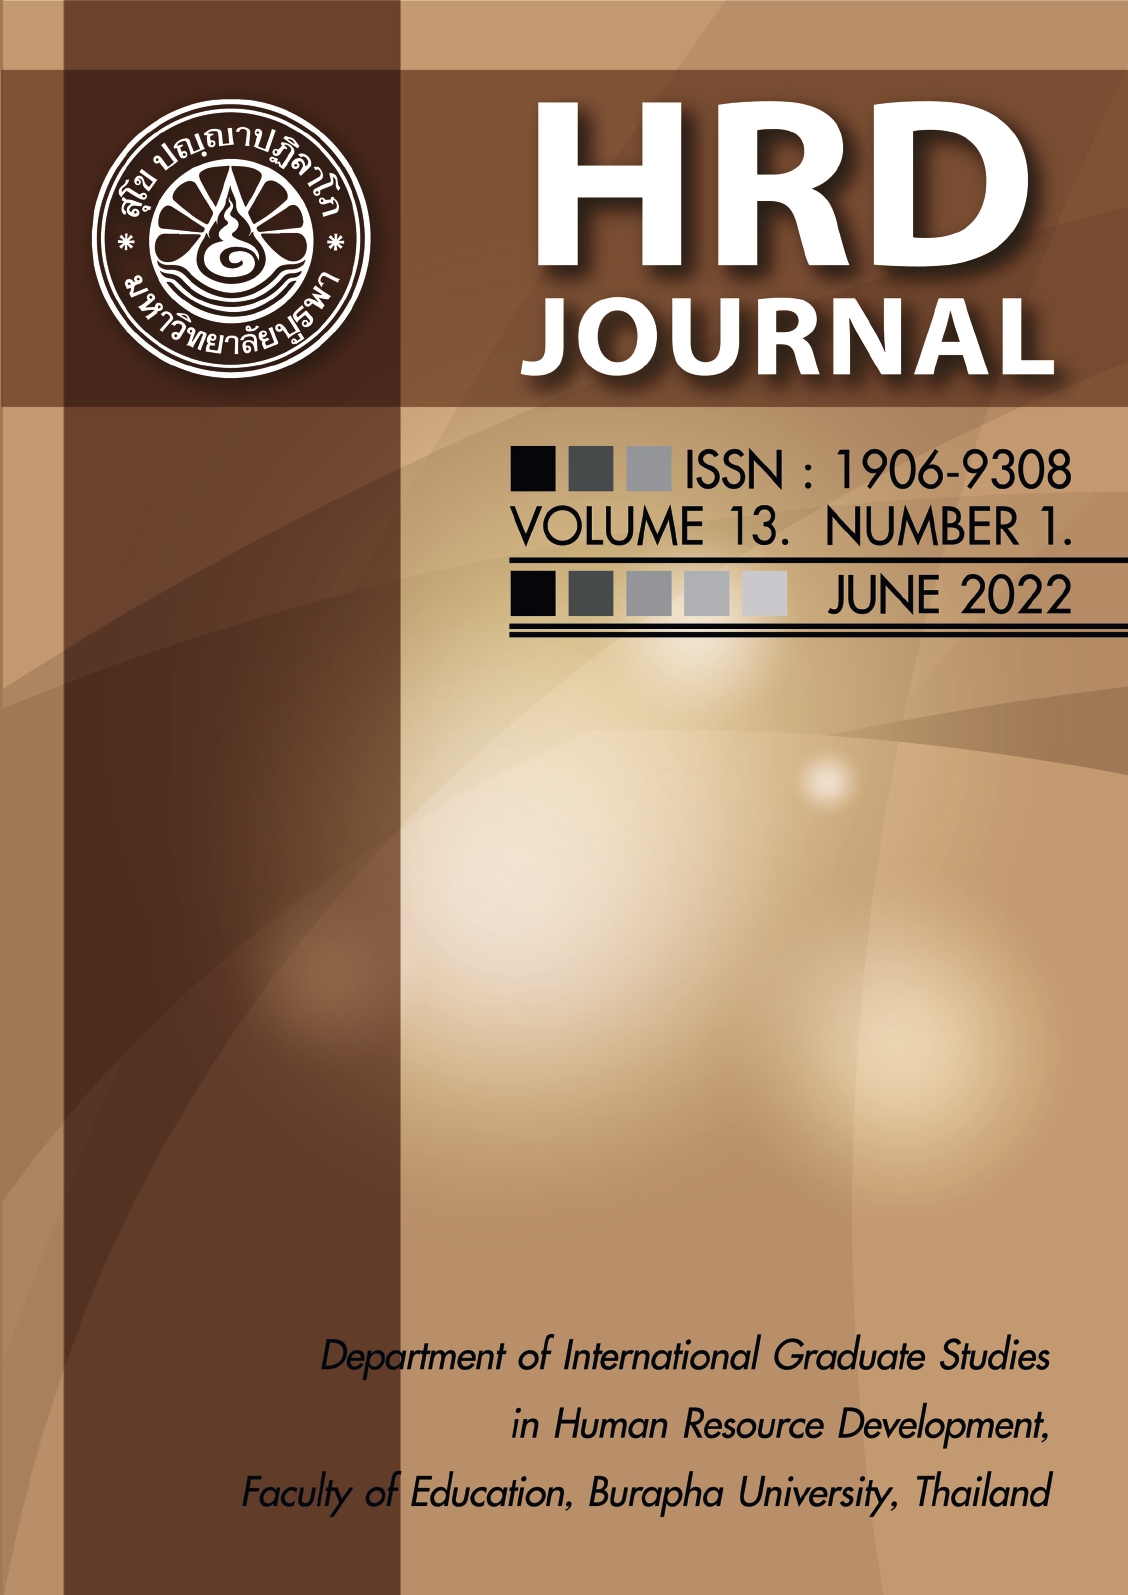 					View Vol. 13 No. 1 (2022): HRD Journal Vol.13 No.1 June 2022
				